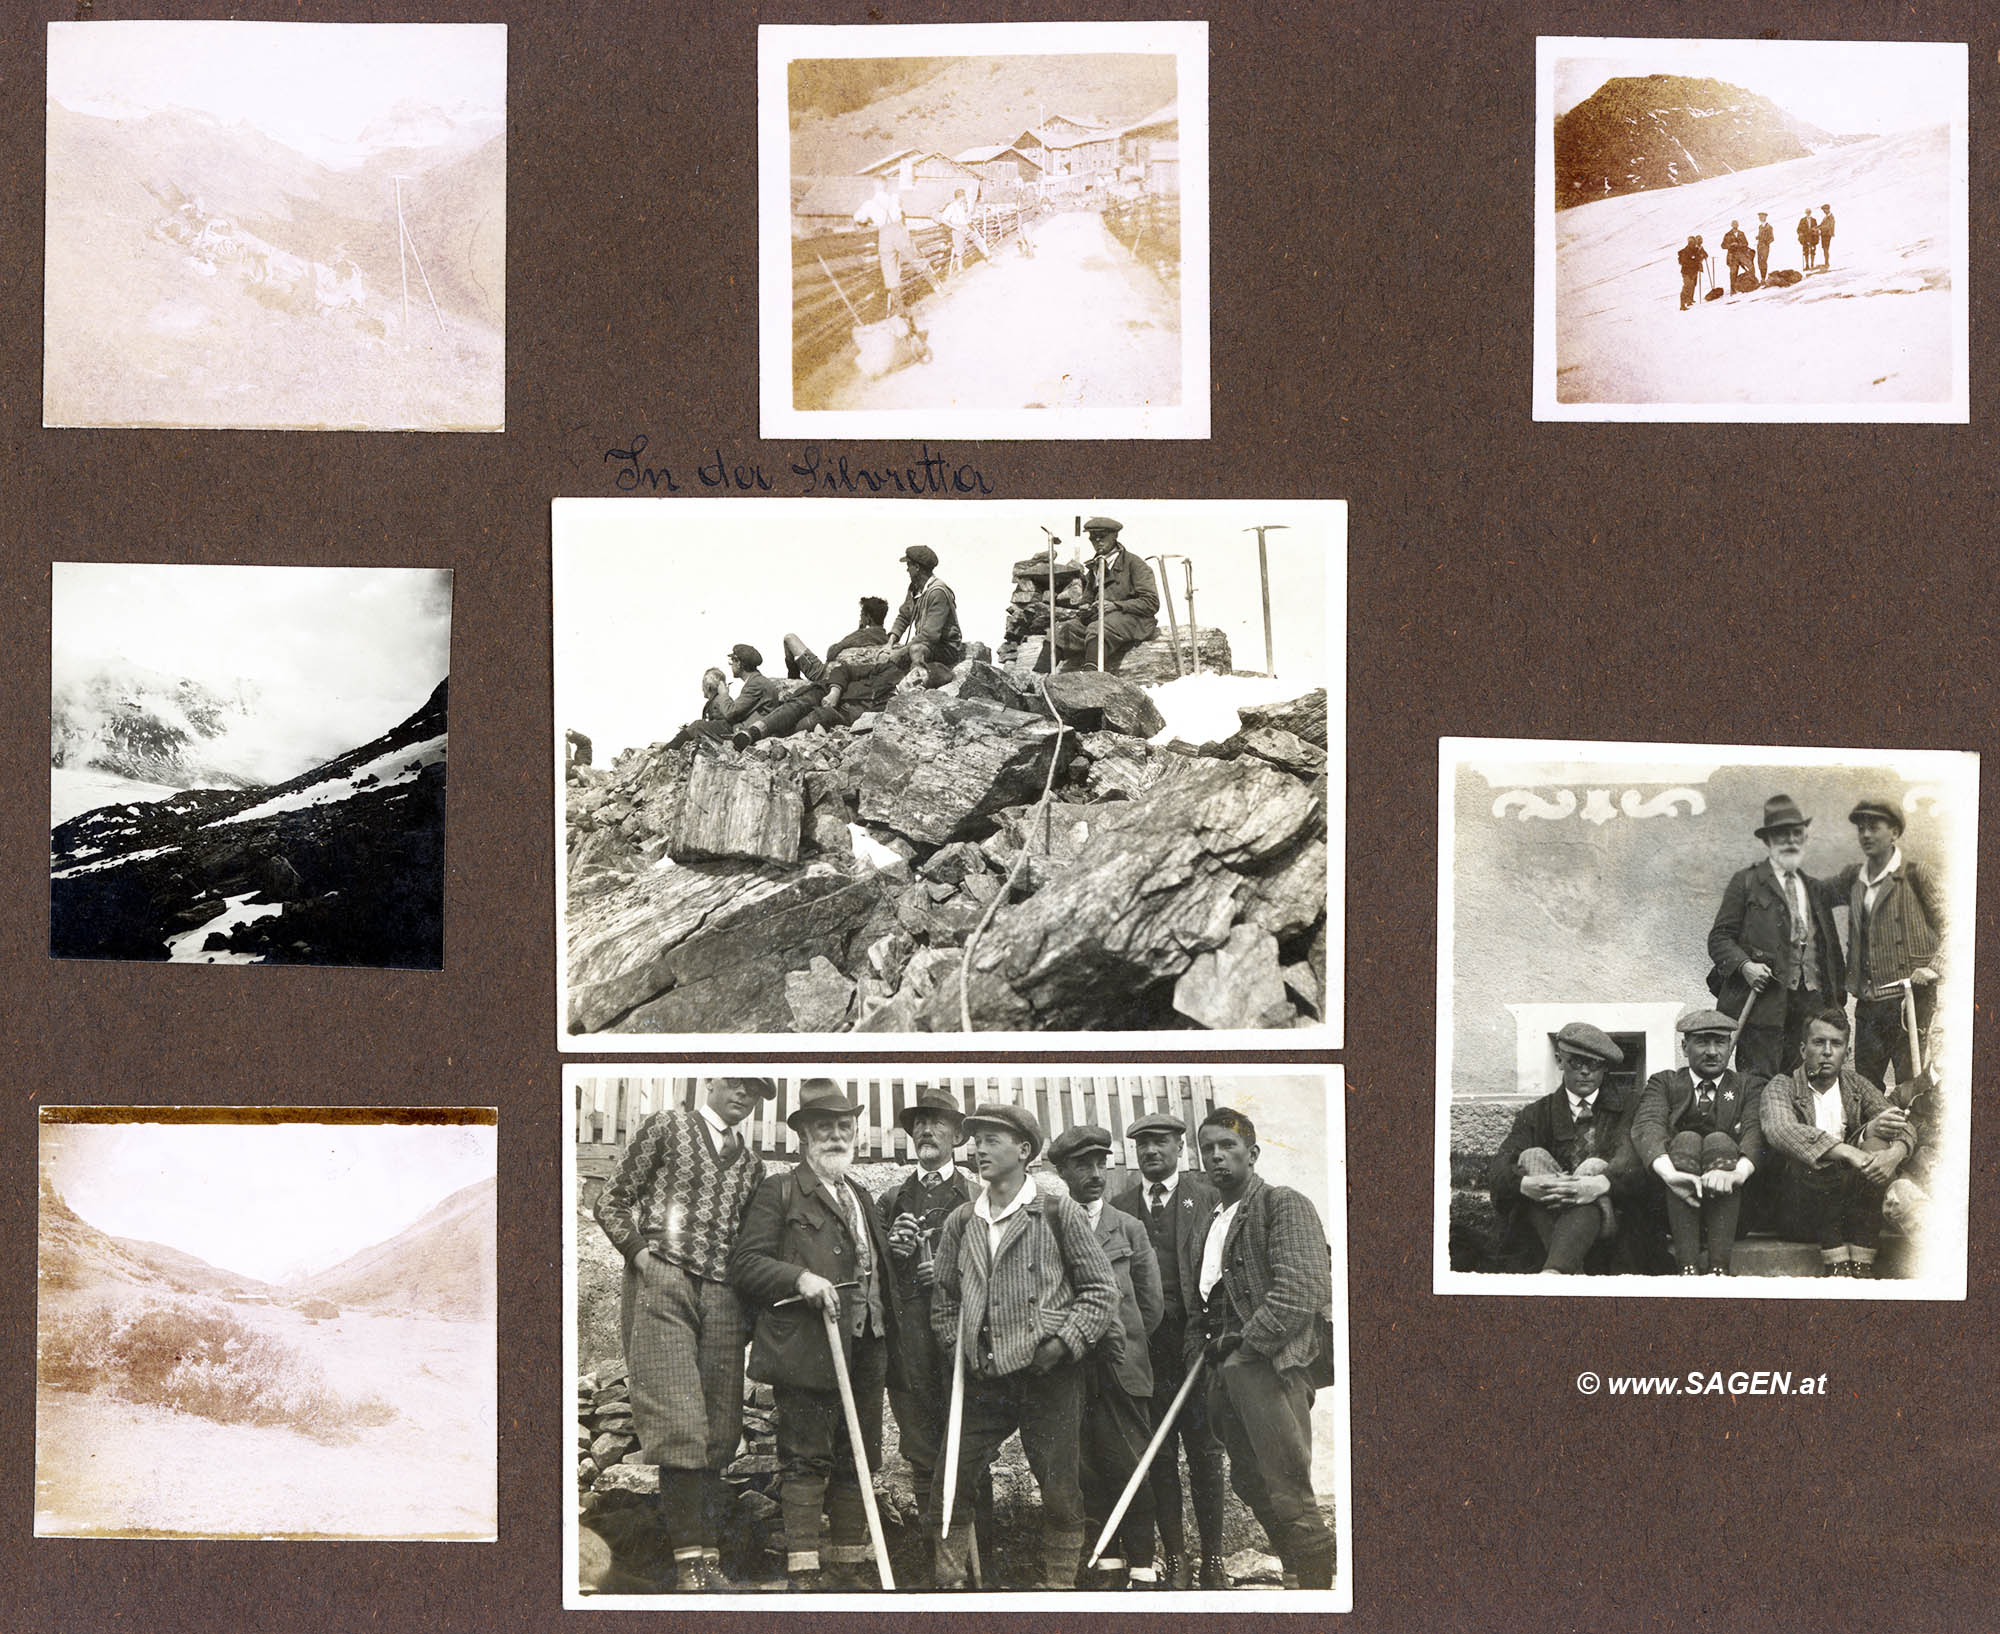 Bergsteigen in der Silvretta 1928